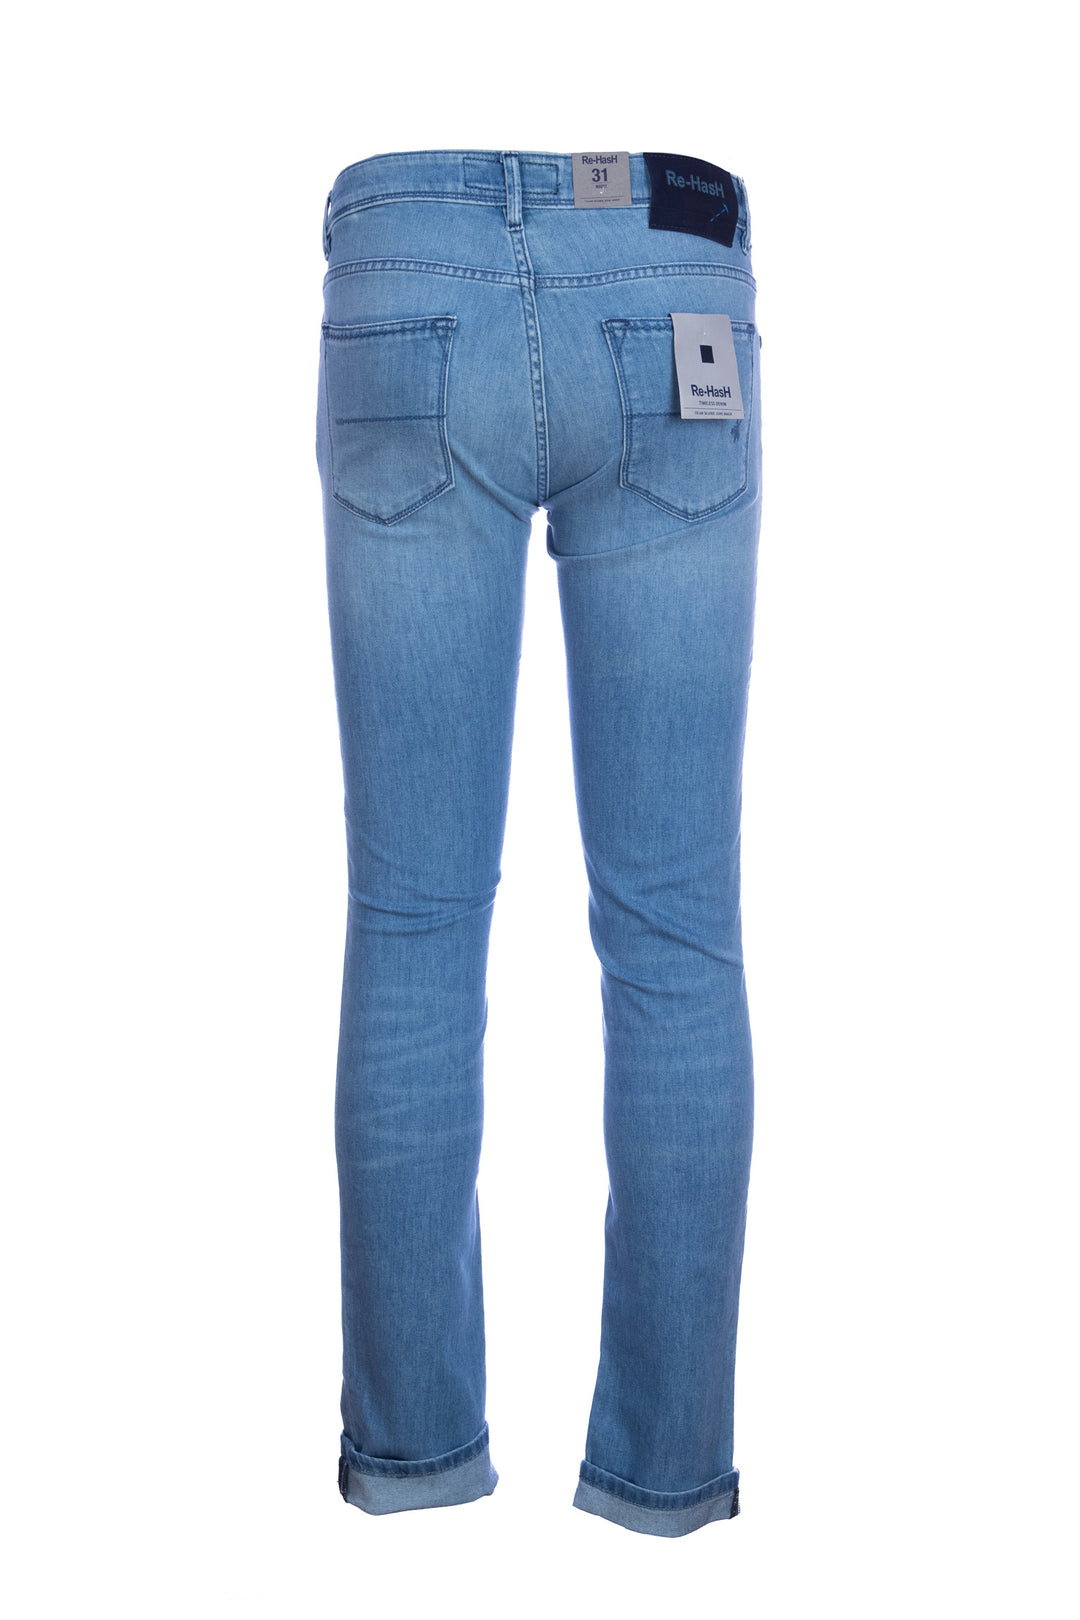 RE-HASH Jeans 5 tasche “RUBENS-Z” in denim stretch lavaggio chiaro 8oz - Mancinelli 1954